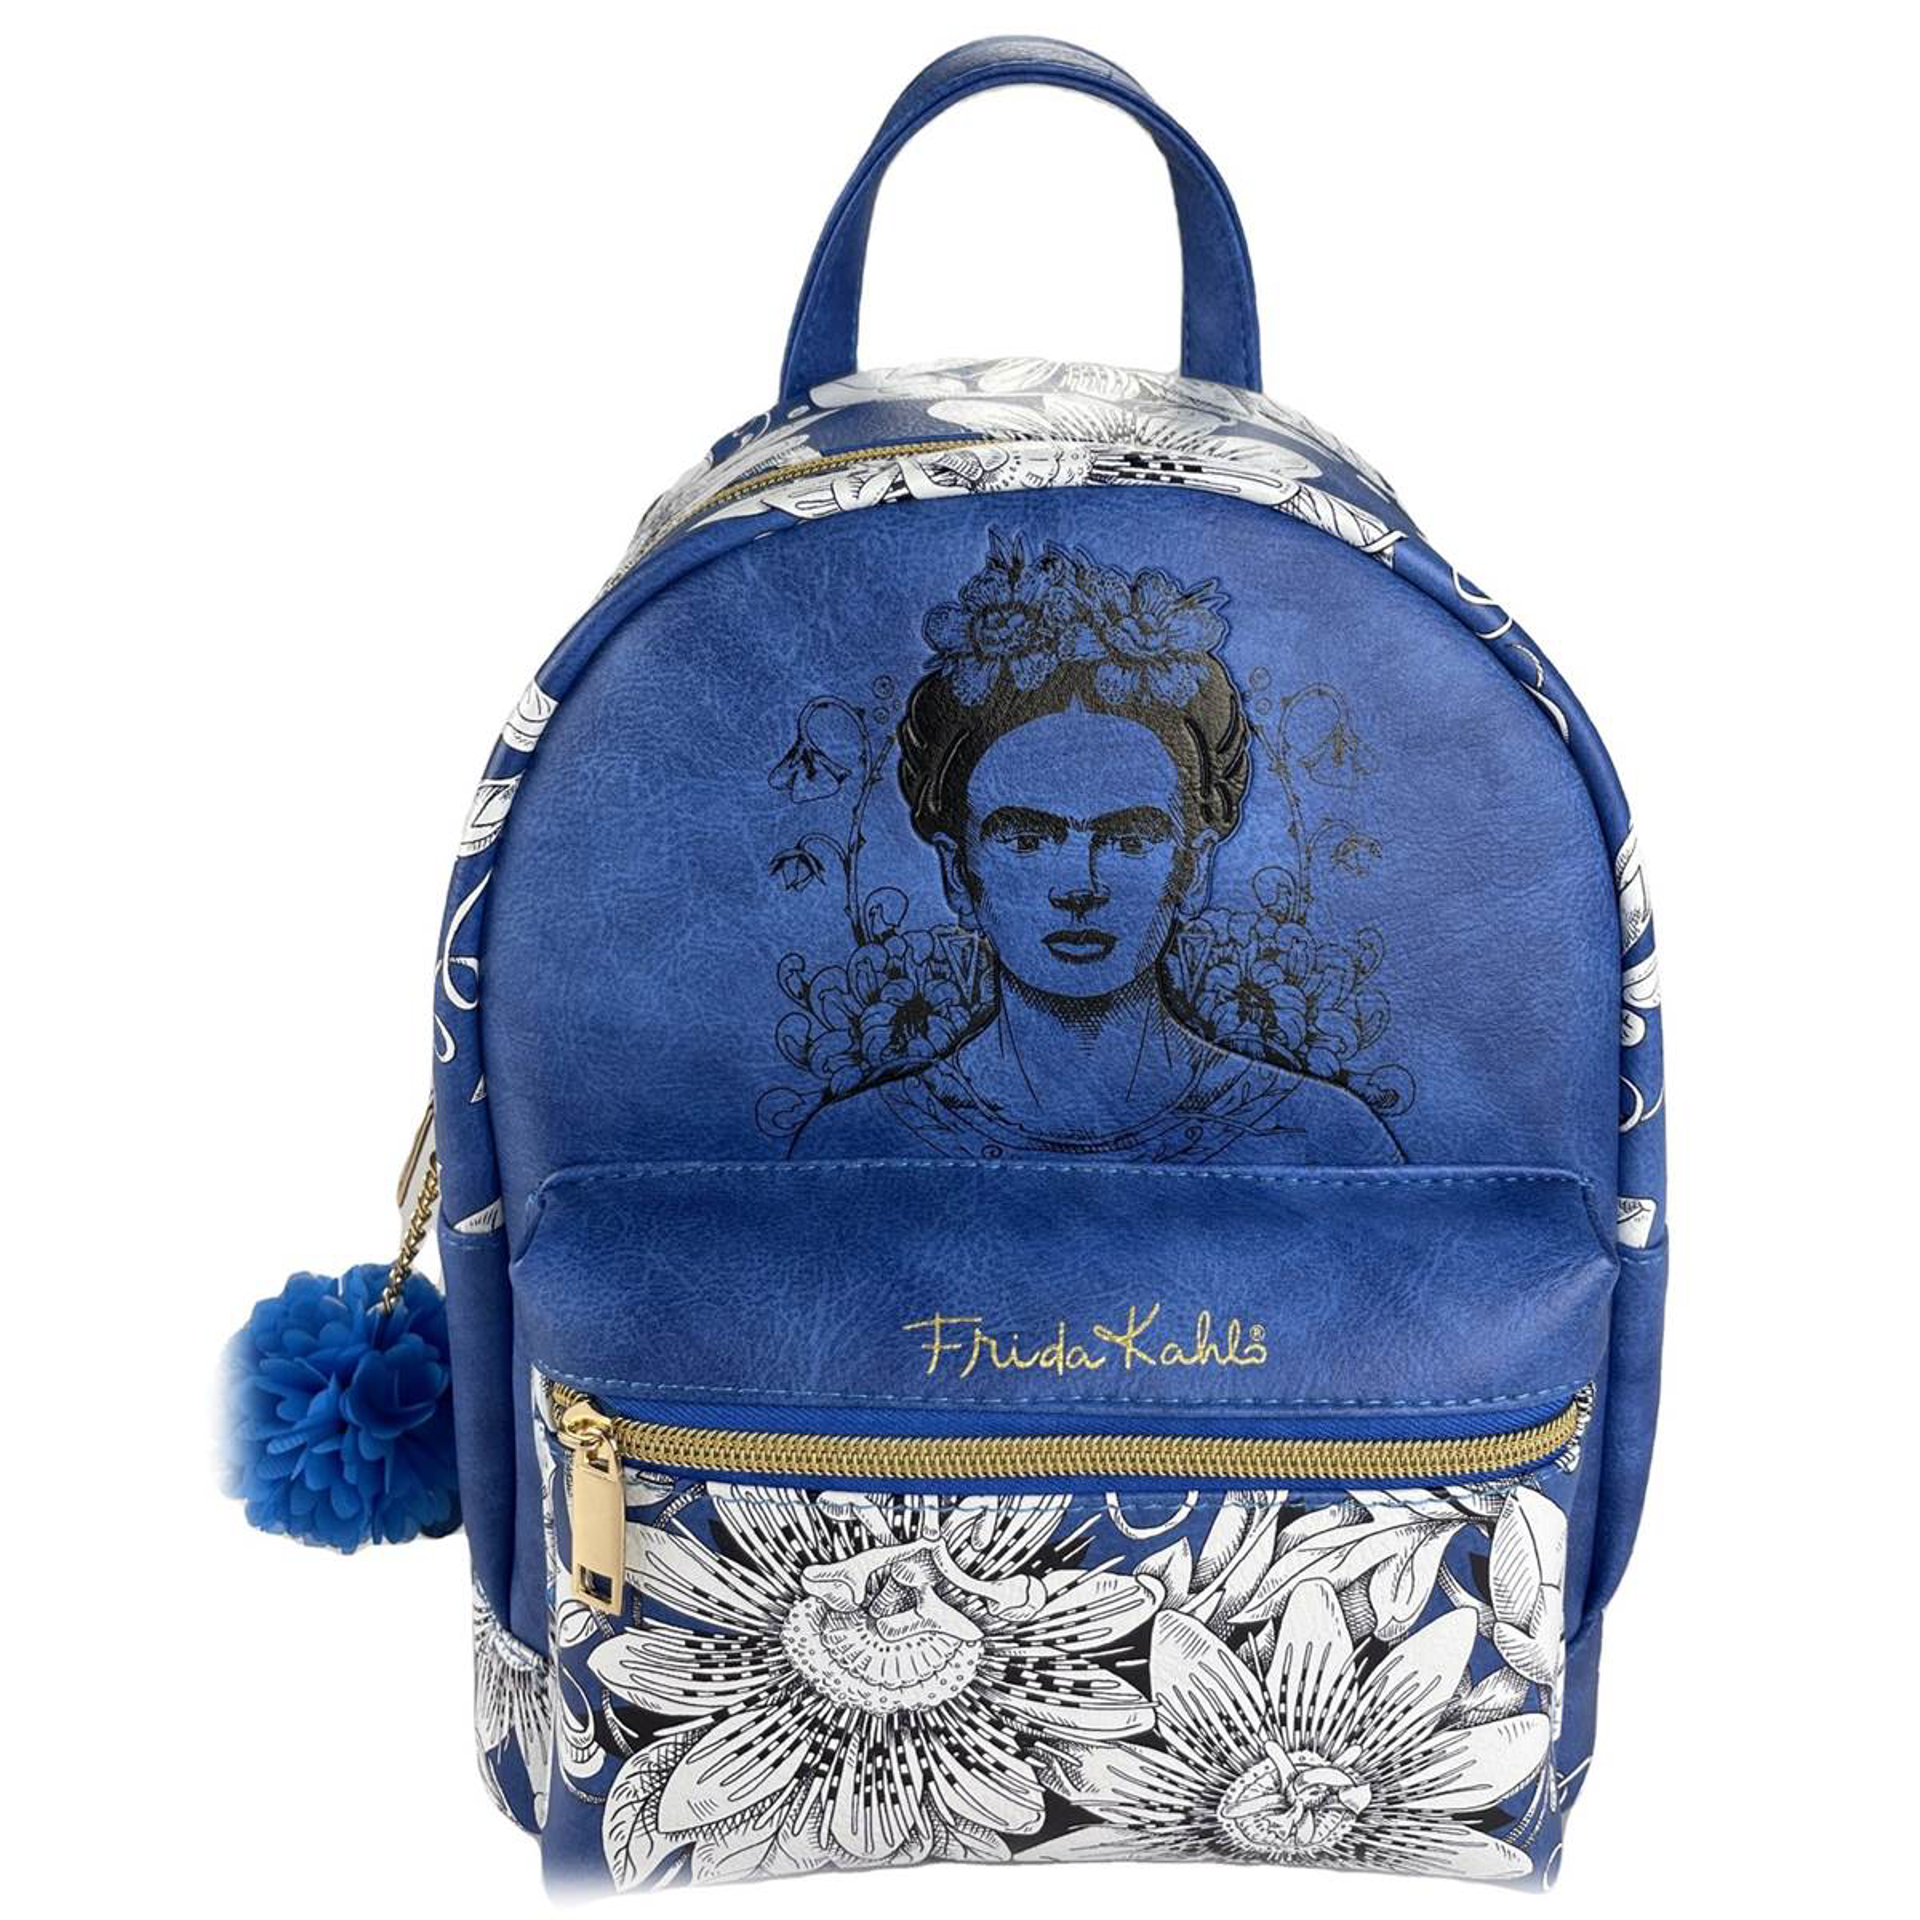 Frida Kahlo - Sac à dos Fashion bleu